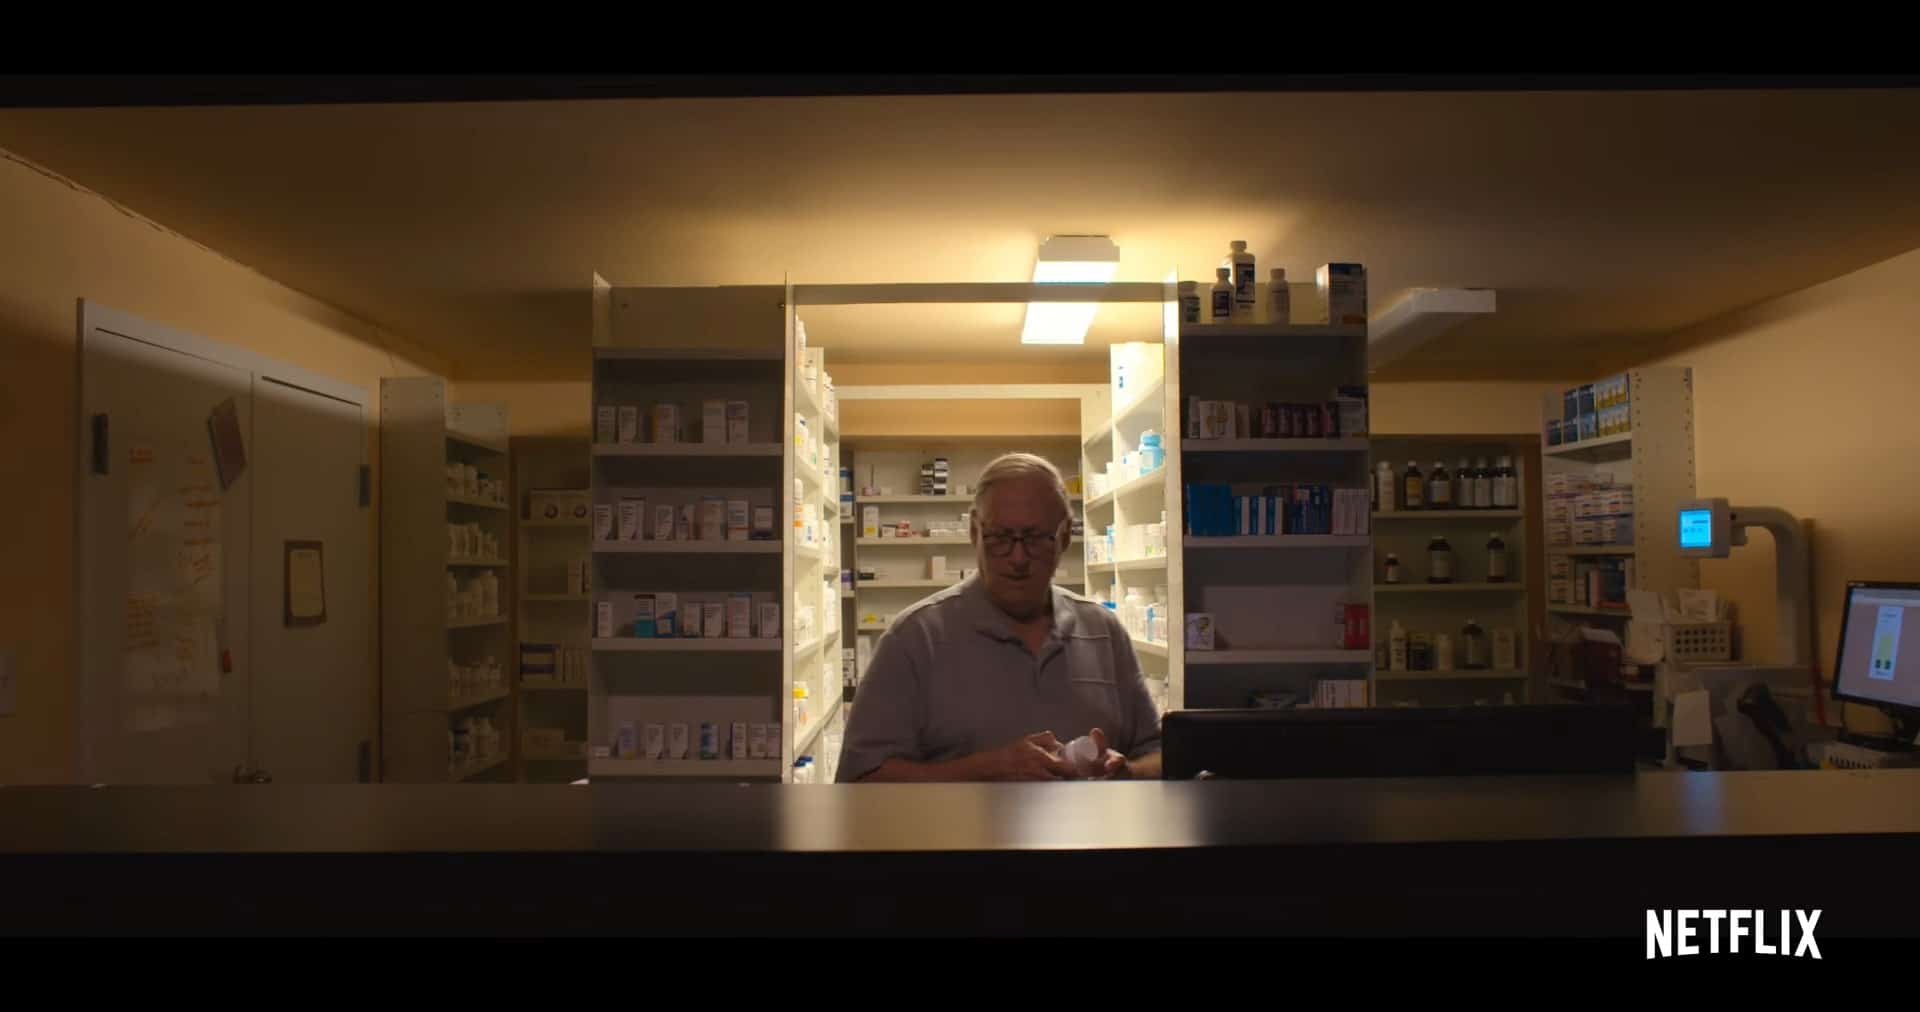 The Pharmacist Netflix Trailer, Documentary, Docuseries, Netflix Pharma Documentary, Coming to Netflix in February 2020